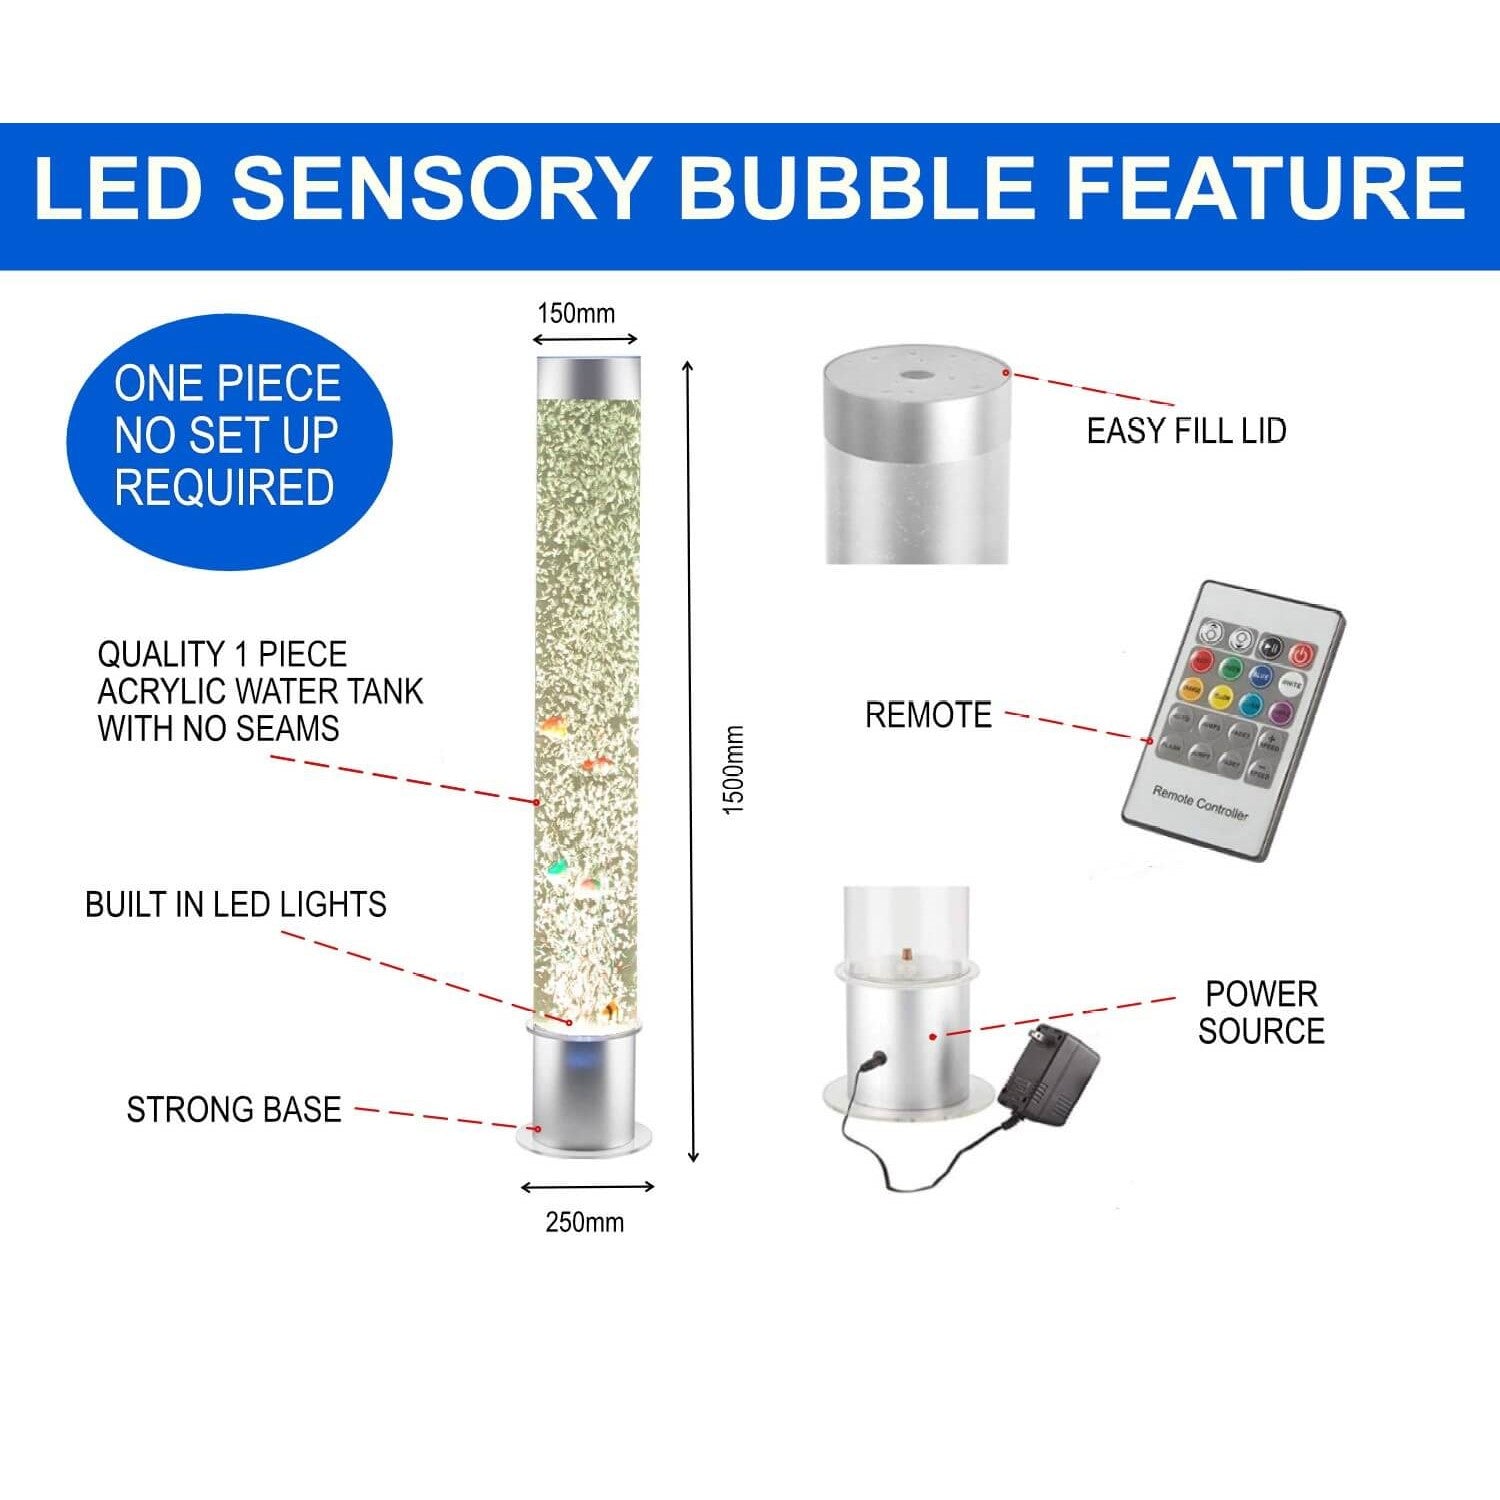 Sensory Bubble Tube features